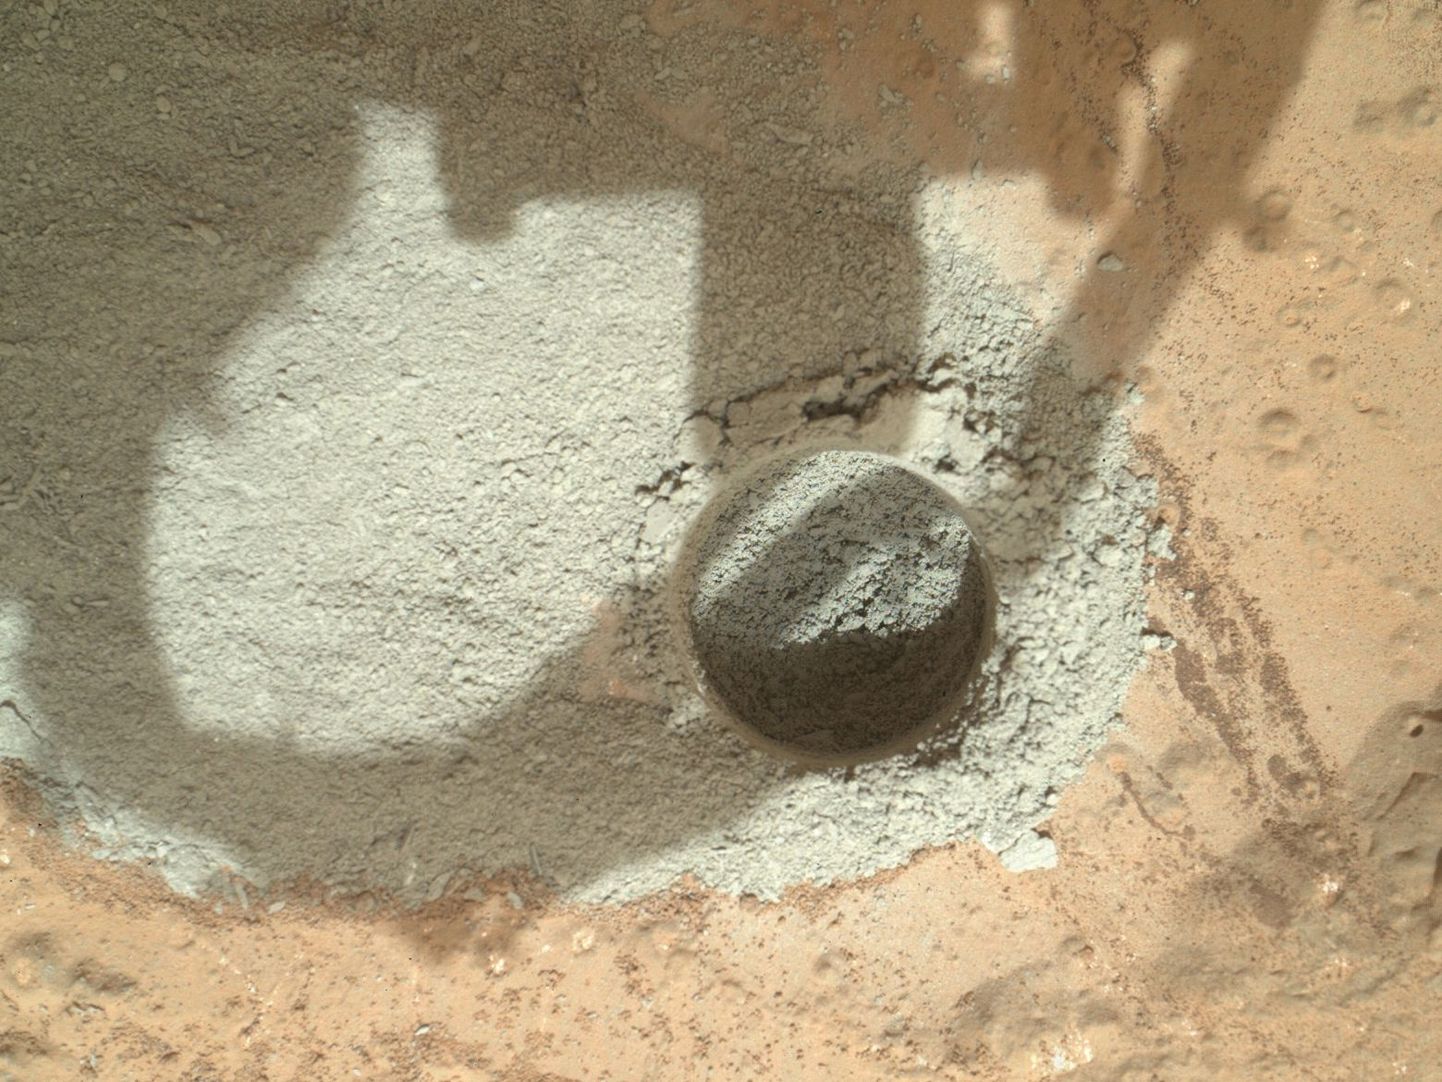 Kulgur Curiosity puuritud auk Marsil